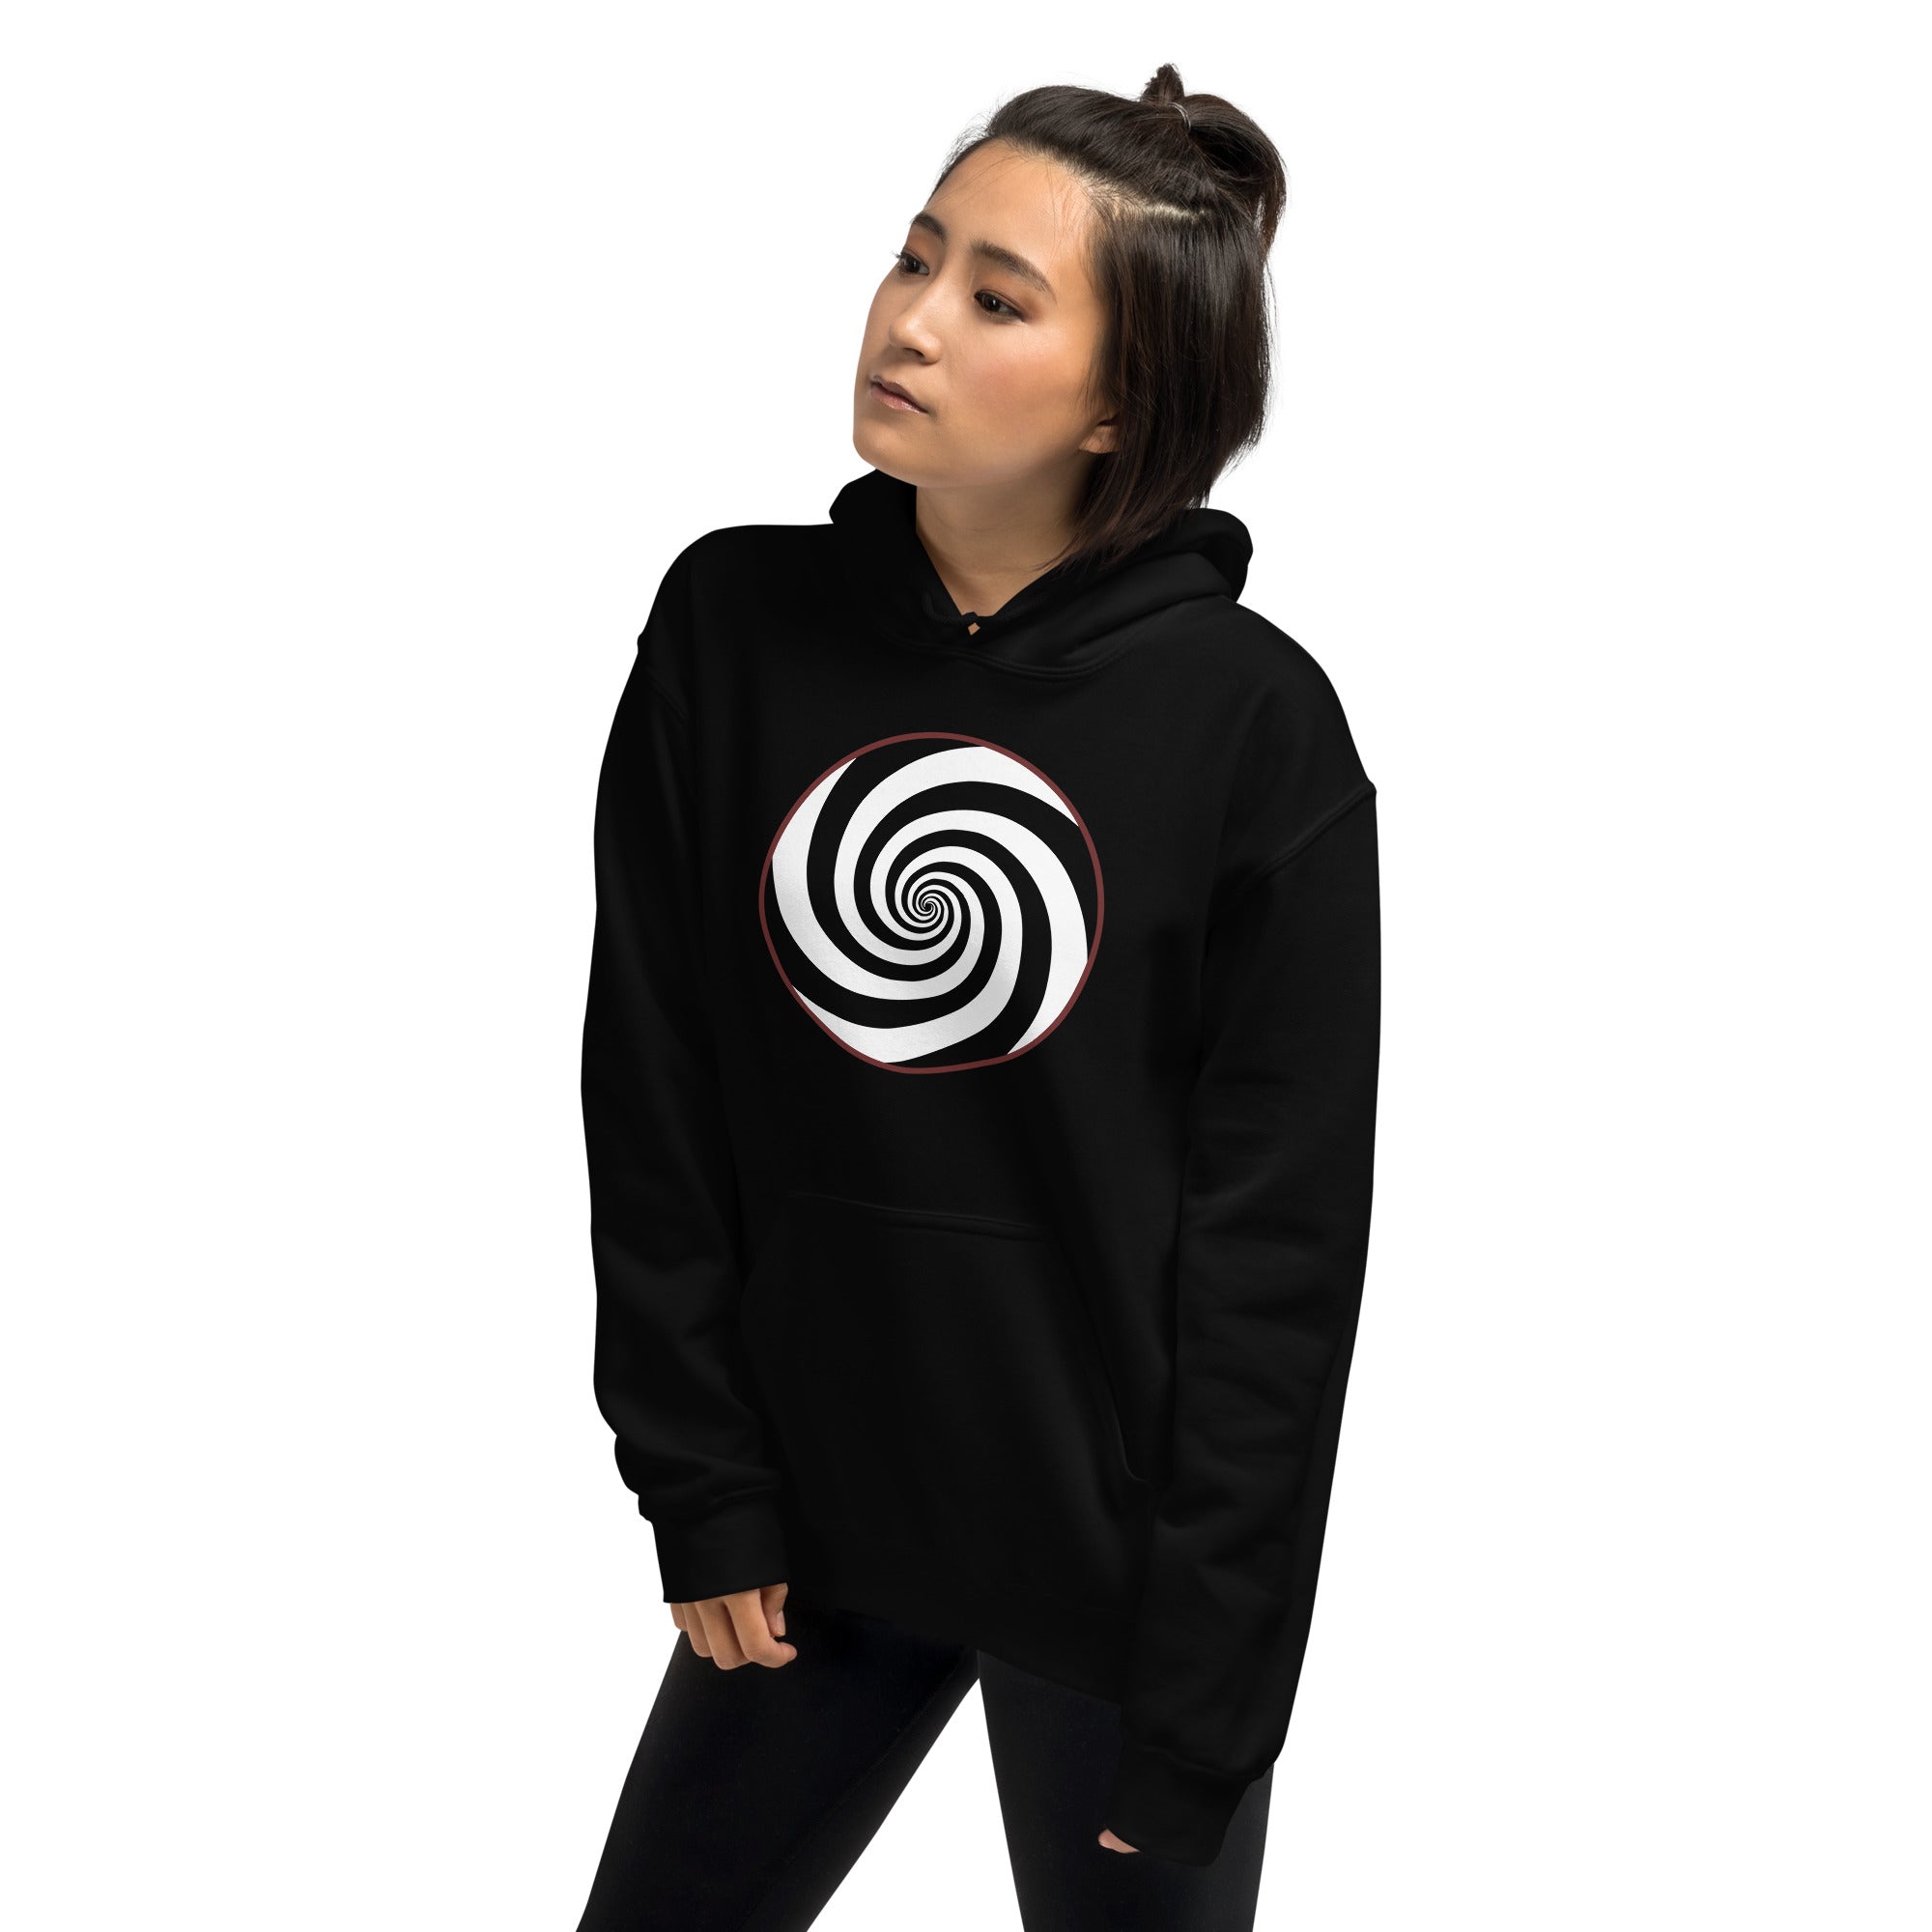 Hypnotic Hypnosis Spiral Swirl Illusion Twilight Zone Unisex Hoodie Sweatshirt